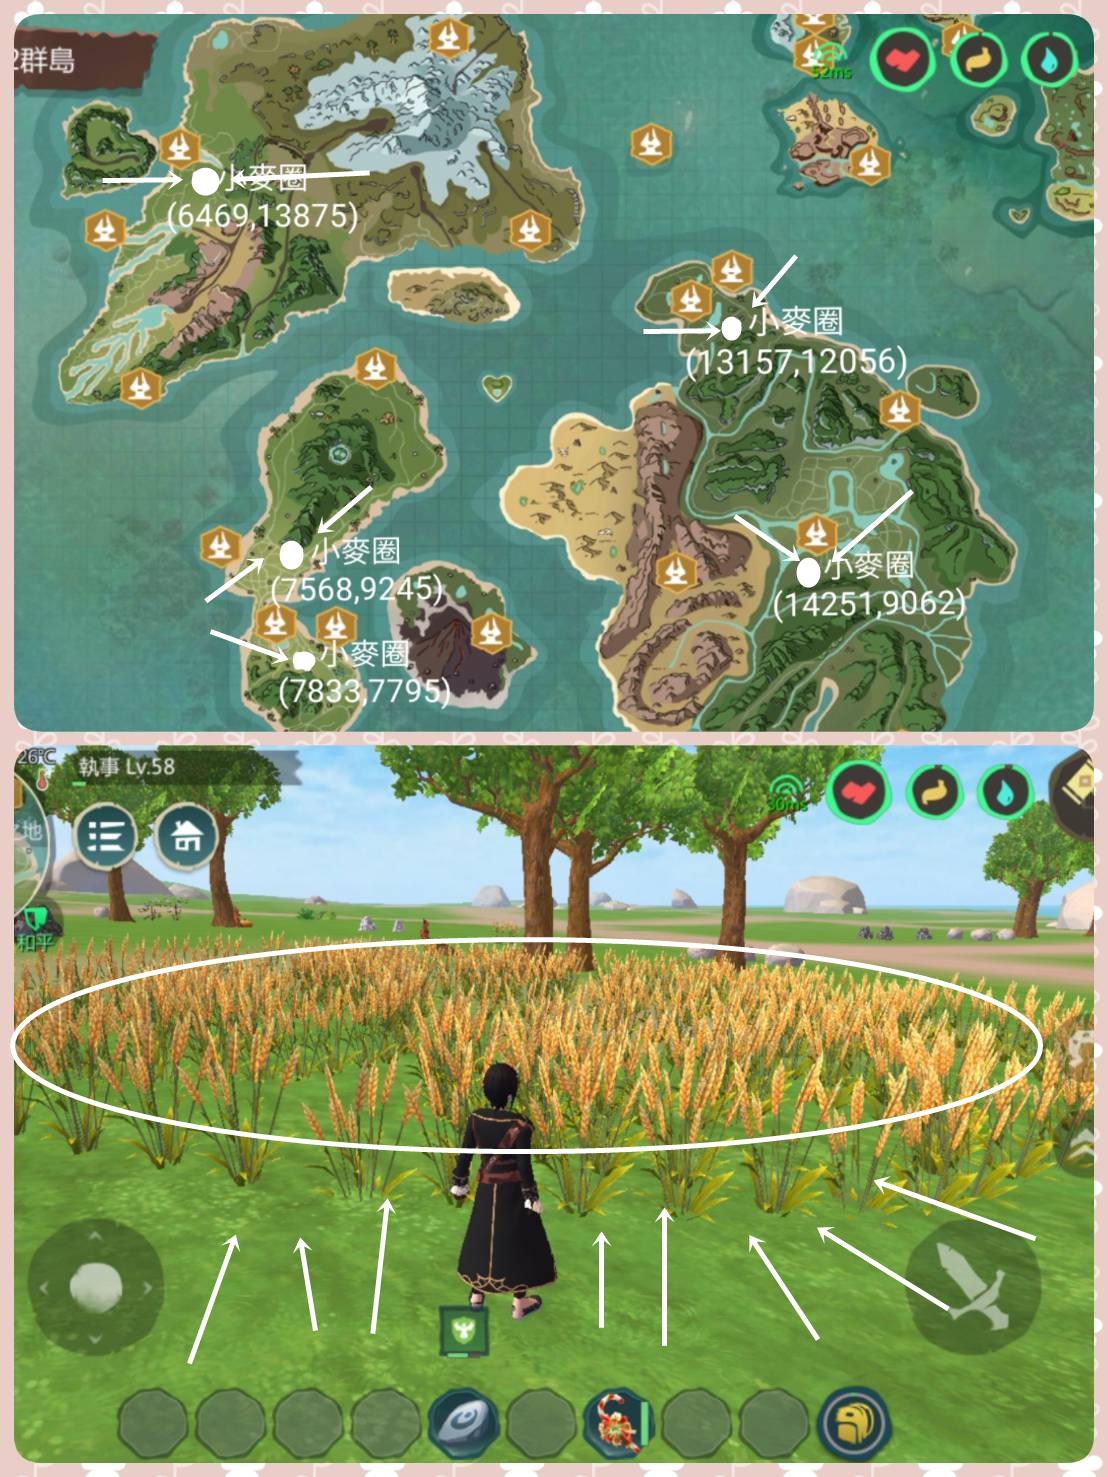 Wheat Location utopia origin